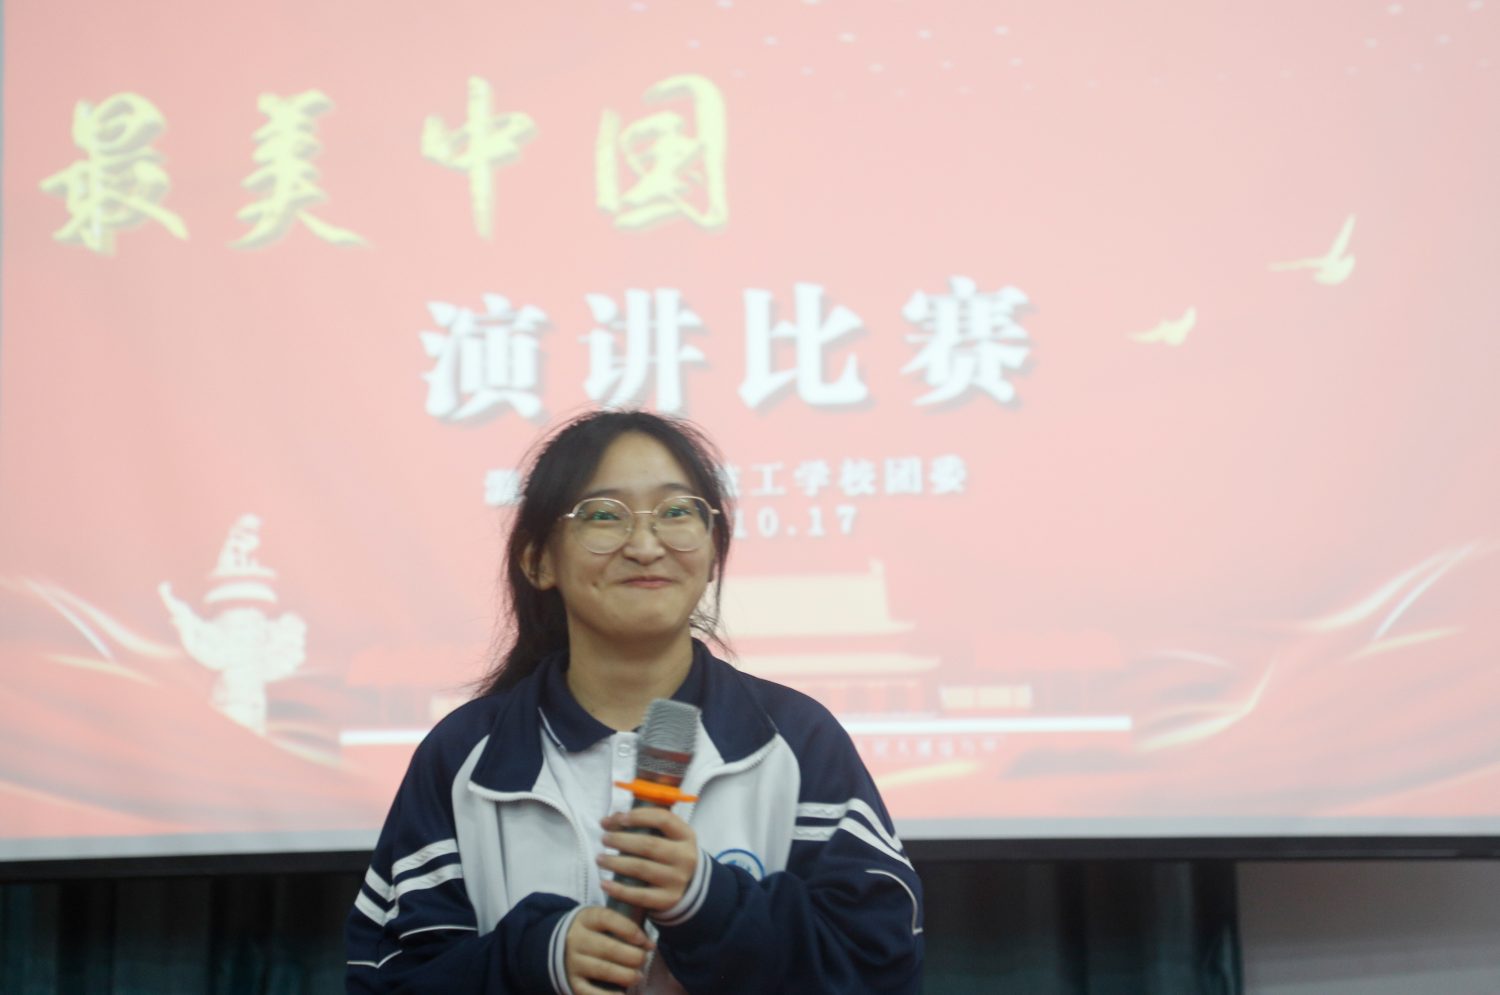 温州市才华技工学校“最美中国”主题演讲比赛圆满举行